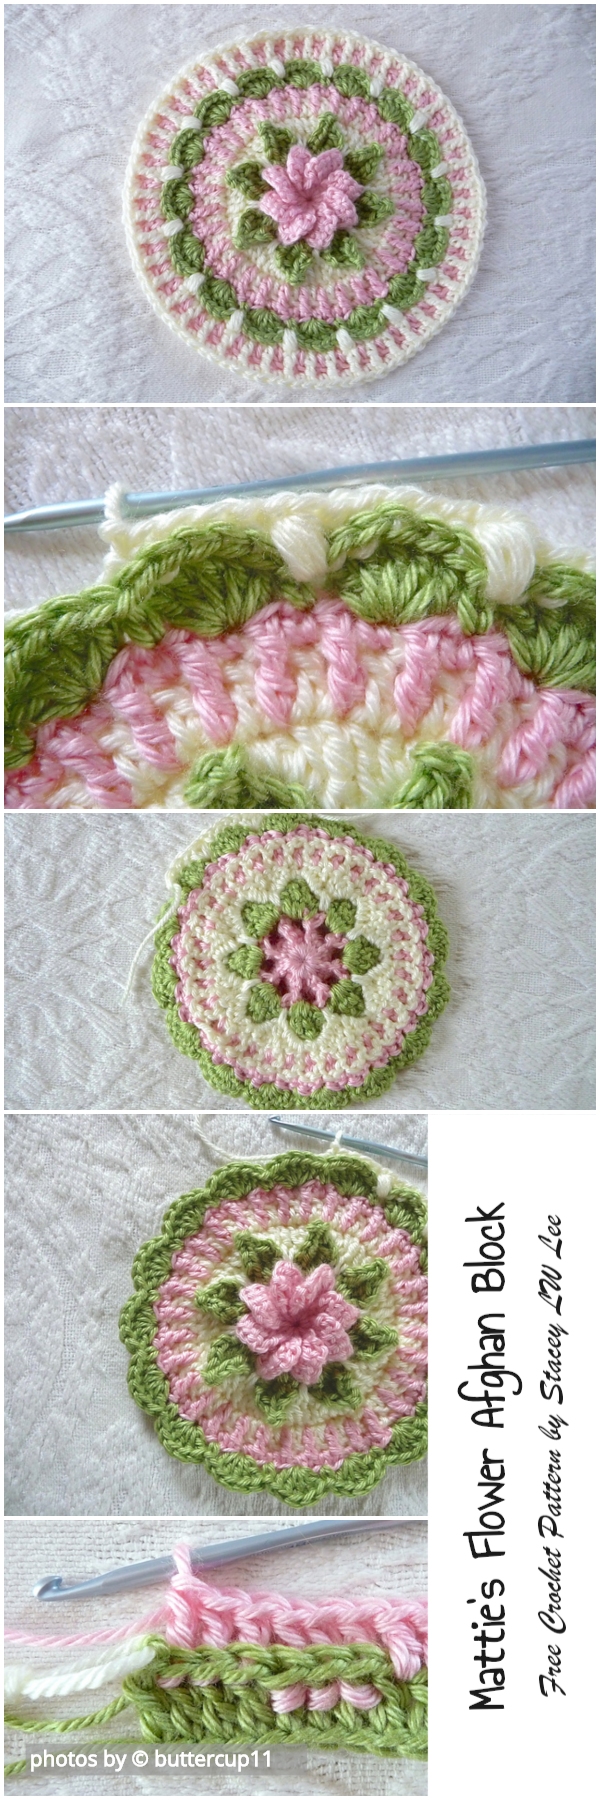 Matties Flower Afghan Block Crochet Pattern